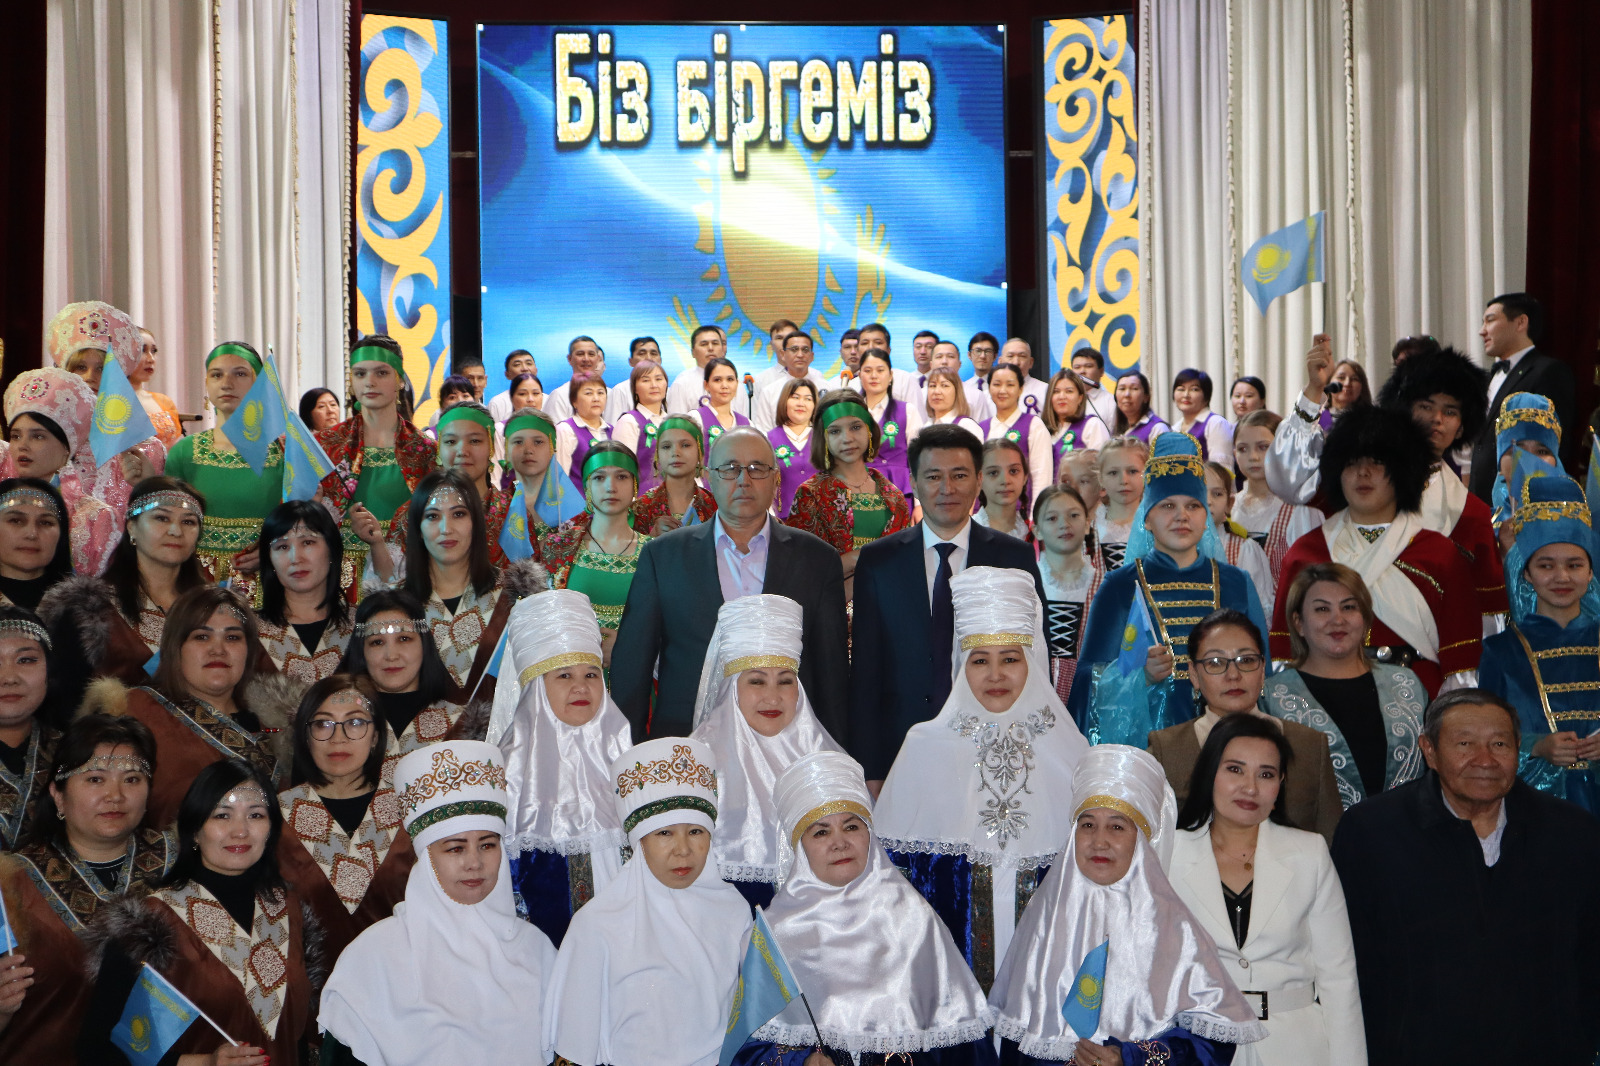 Сегодня в Доме культуры им. Мэлса Узбекова прошло торжественное мероприятие, посвященное 1 марта - Дню благодарности